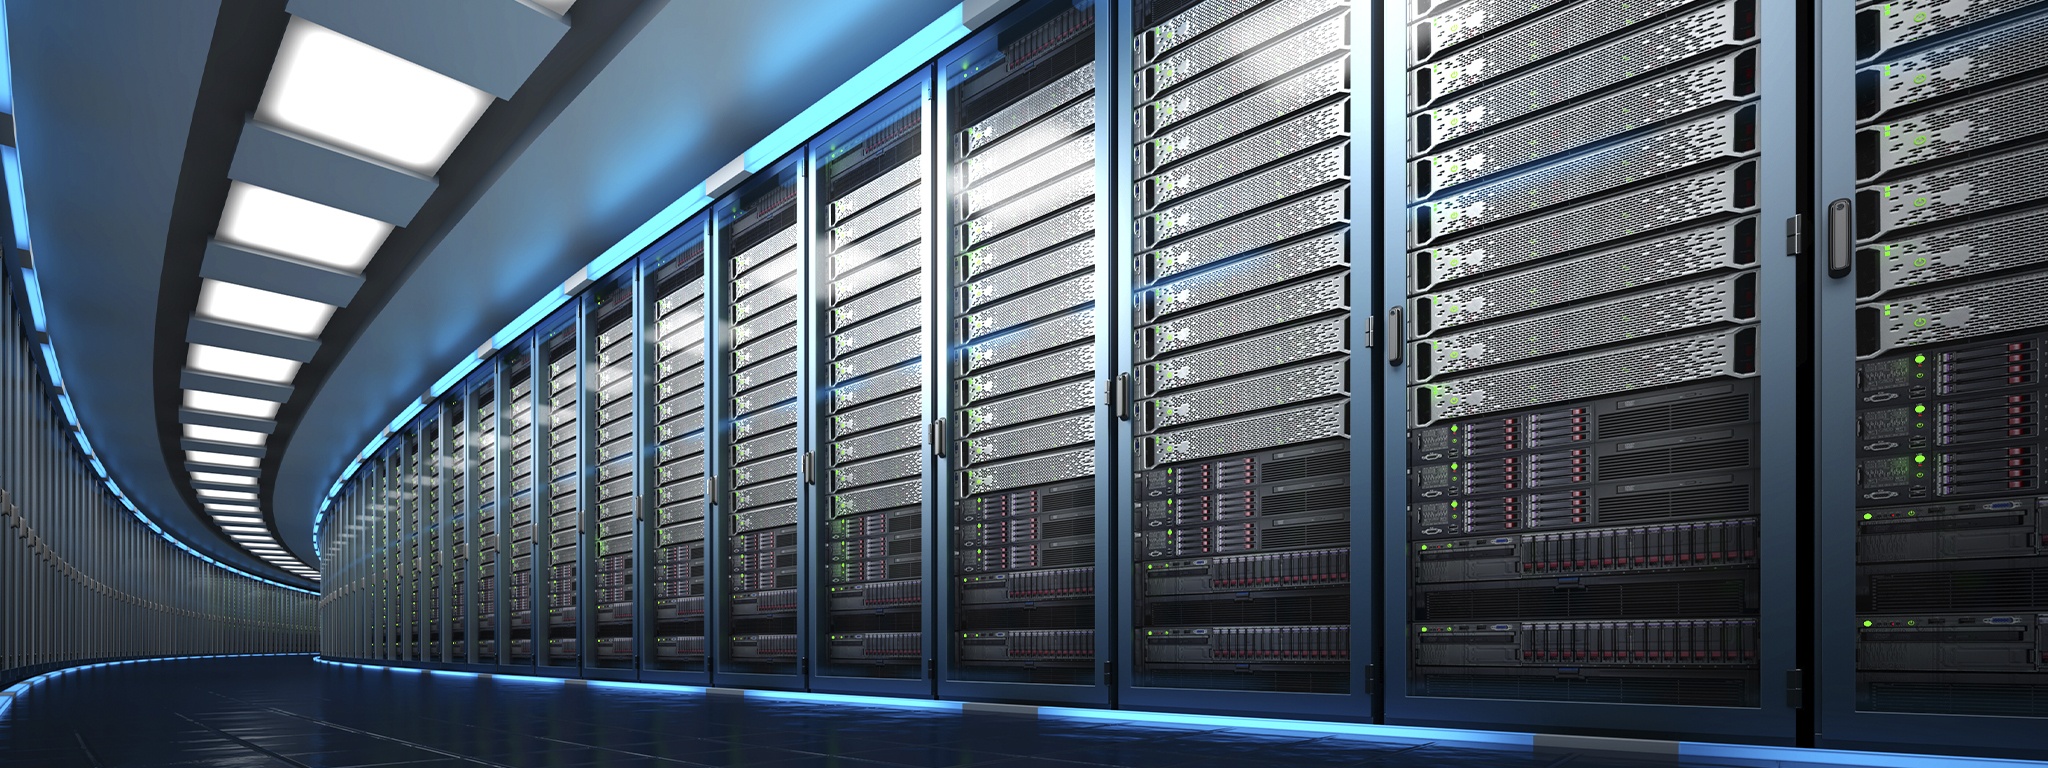 Imagen 3D de un centro de datos que muestra una gran sala de servidores con una larga fila de unidades de rack de servidores